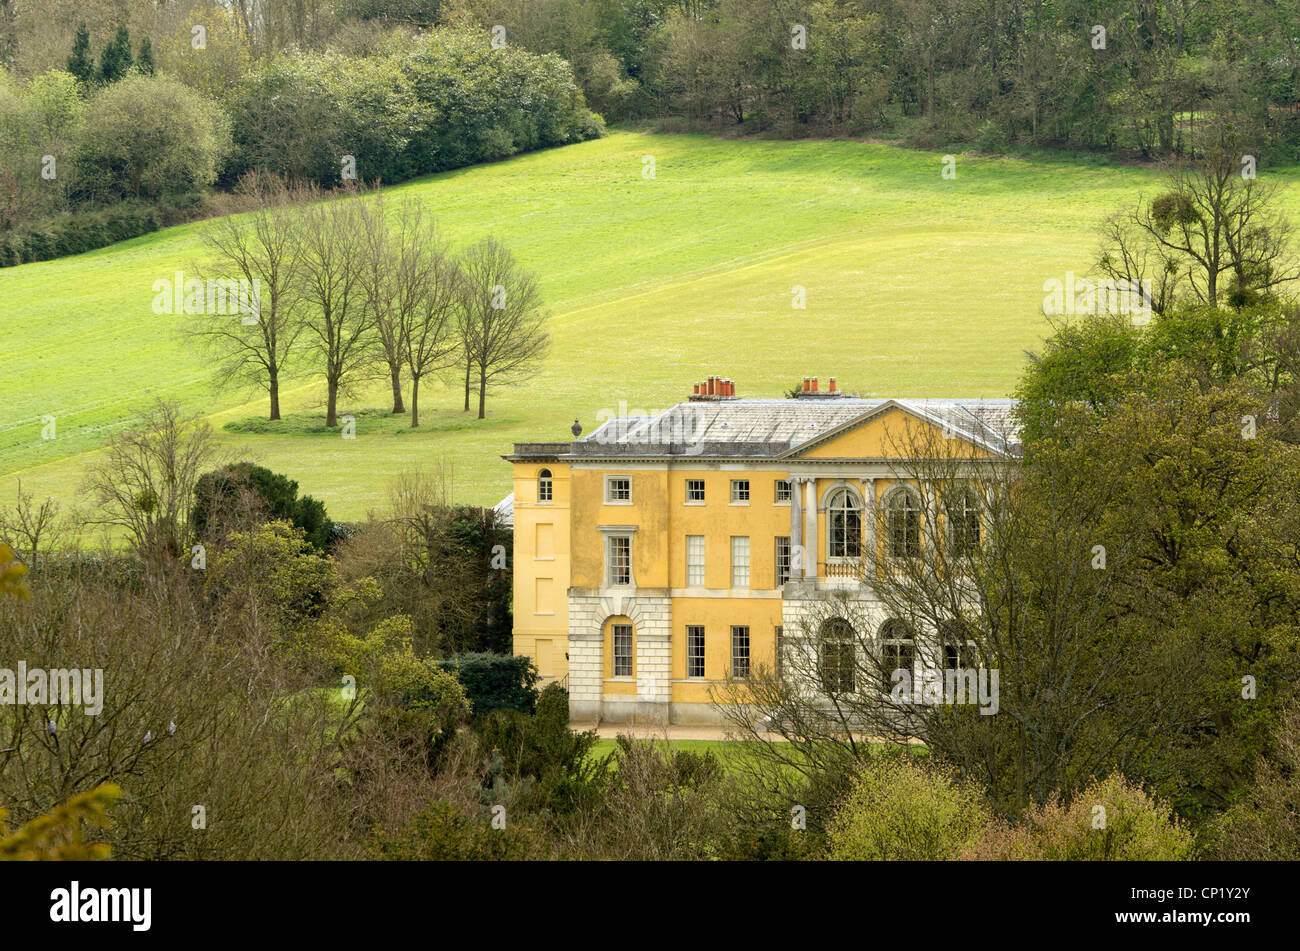 Une vue de West Wycombe Park et le parc d'une propriété du National Trust, l'image réalisée à partir d'une voie publique. Banque D'Images